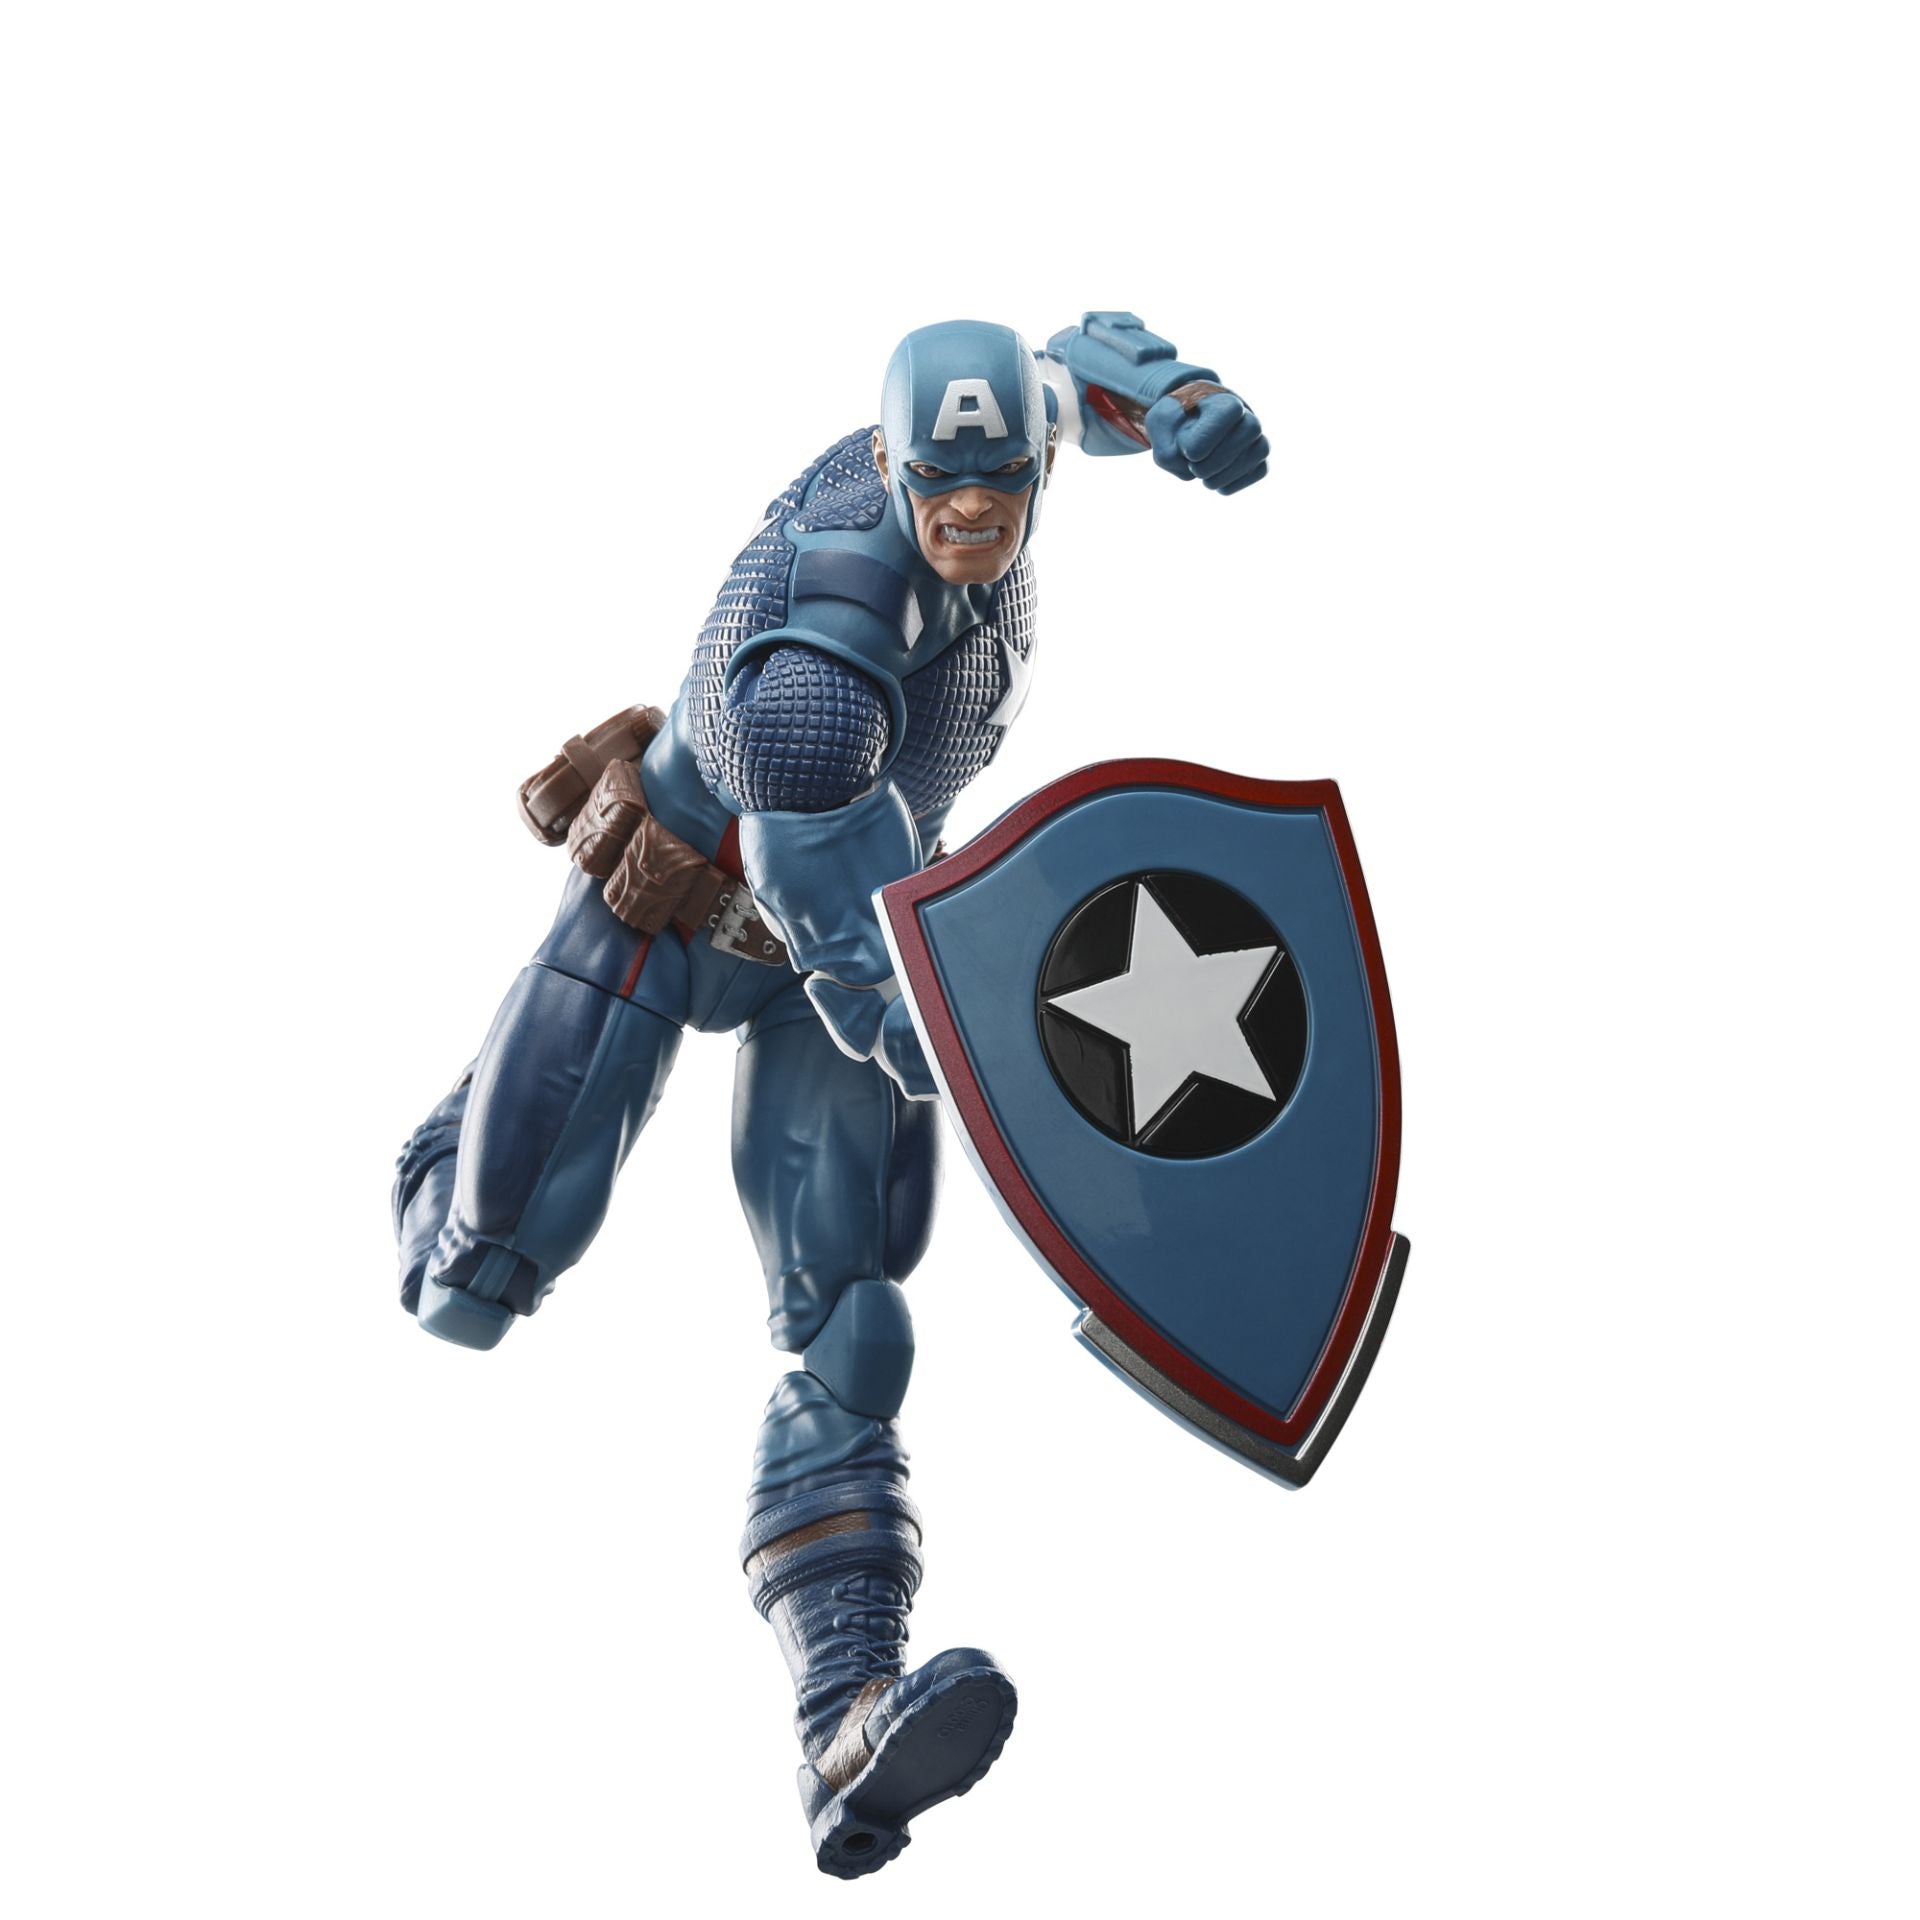 Marvel Legends Captain America (Secret Empire Comics) Action Figure